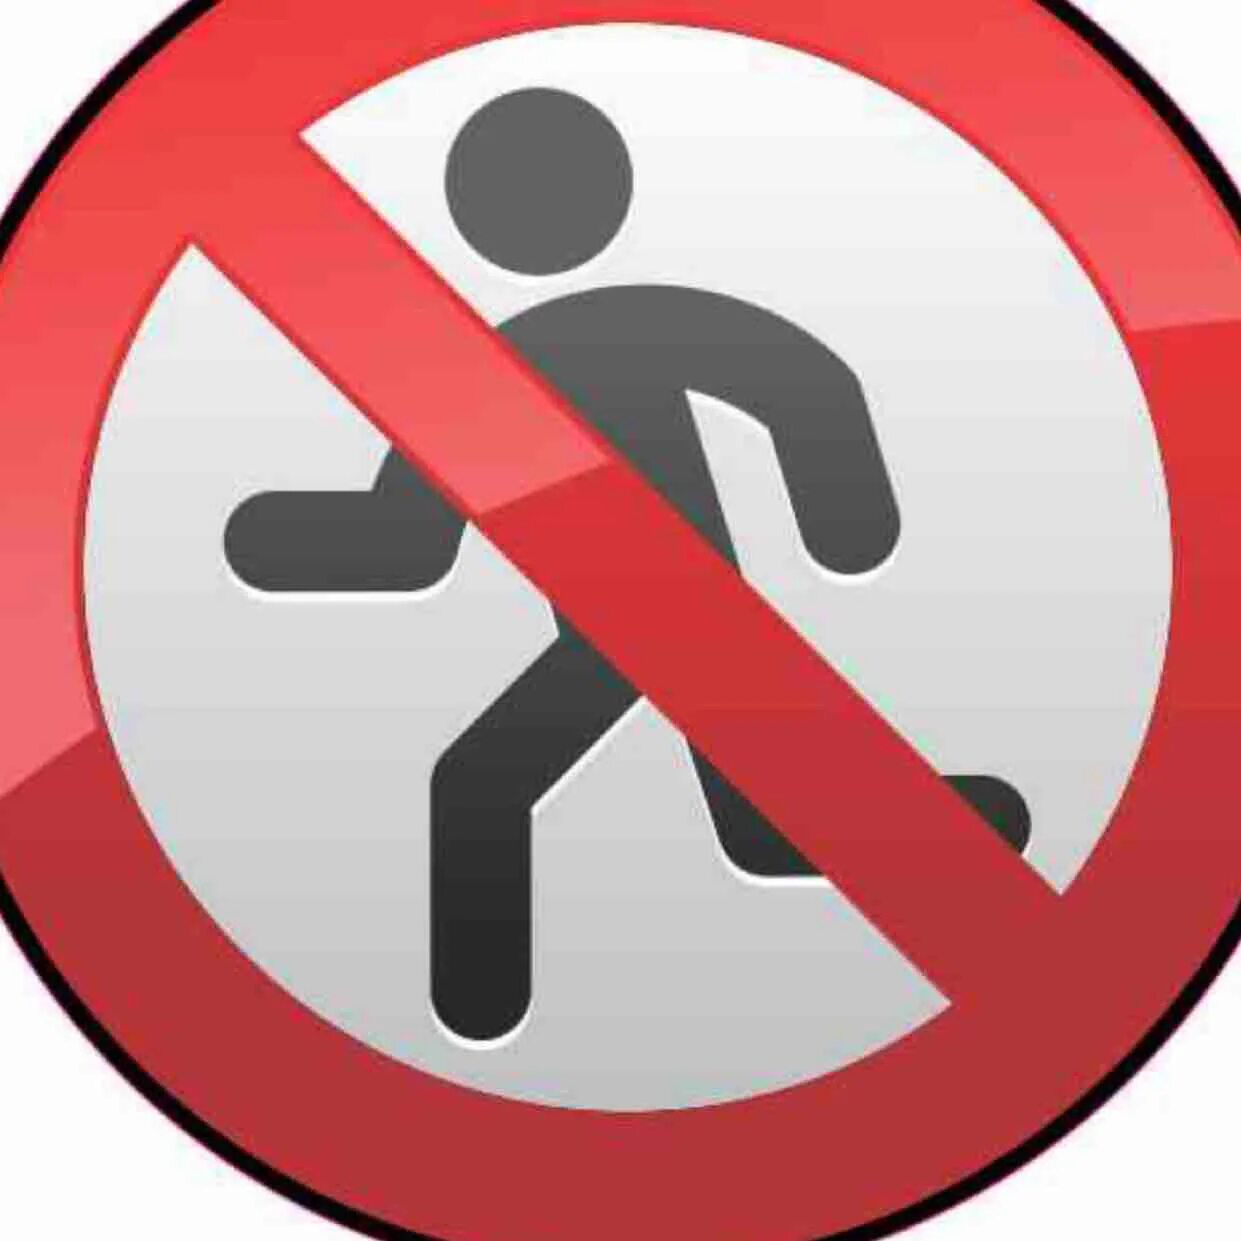 Знаки поведения. Знак не бегать. Знак бегать запрещено. Запрещающие знаки поведения в группе.